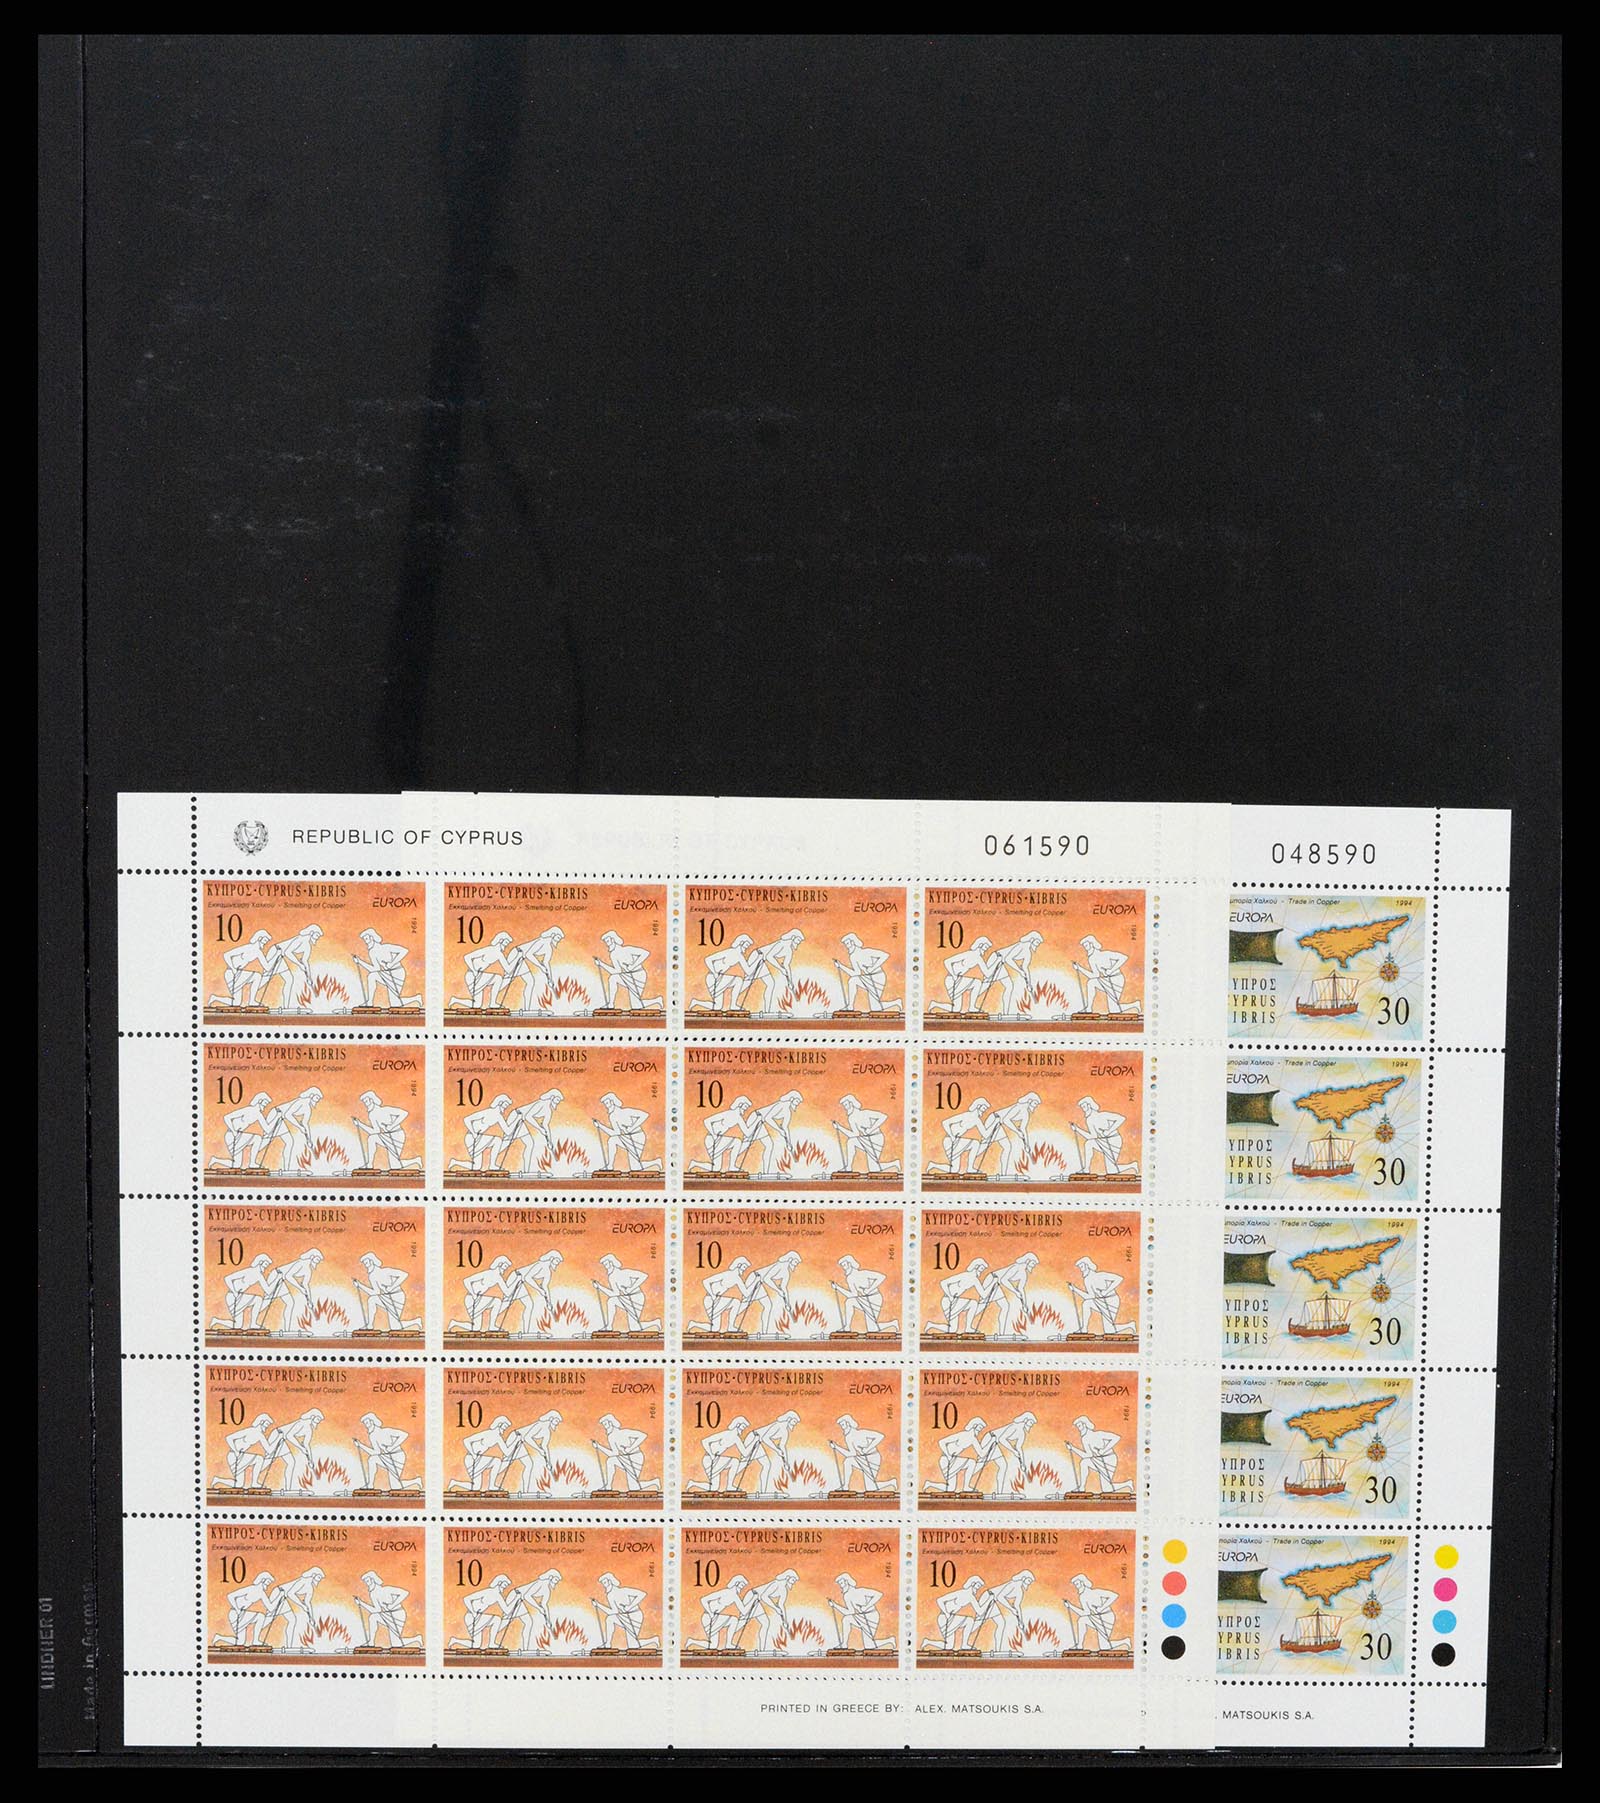 37345 022 - Stamp collection 37345 European countries souvenir sheets.